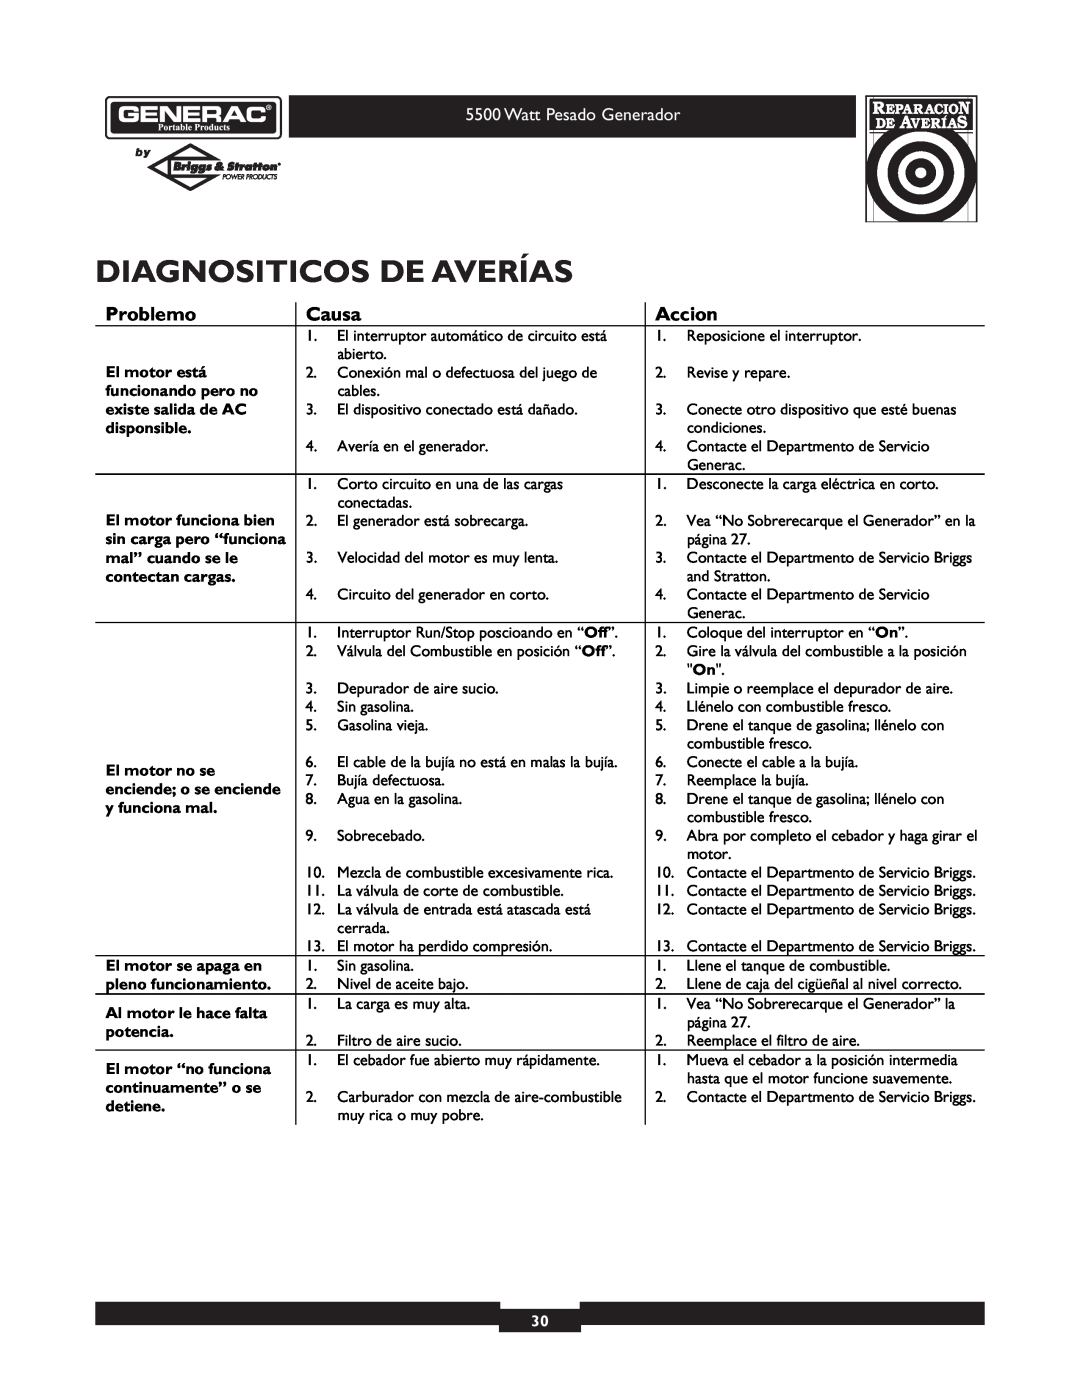 Generac 1654-0 Diagnositicos De Averías, Problemo, Causa, Accion, El motor está, funcionando pero no, existe salida de AC 